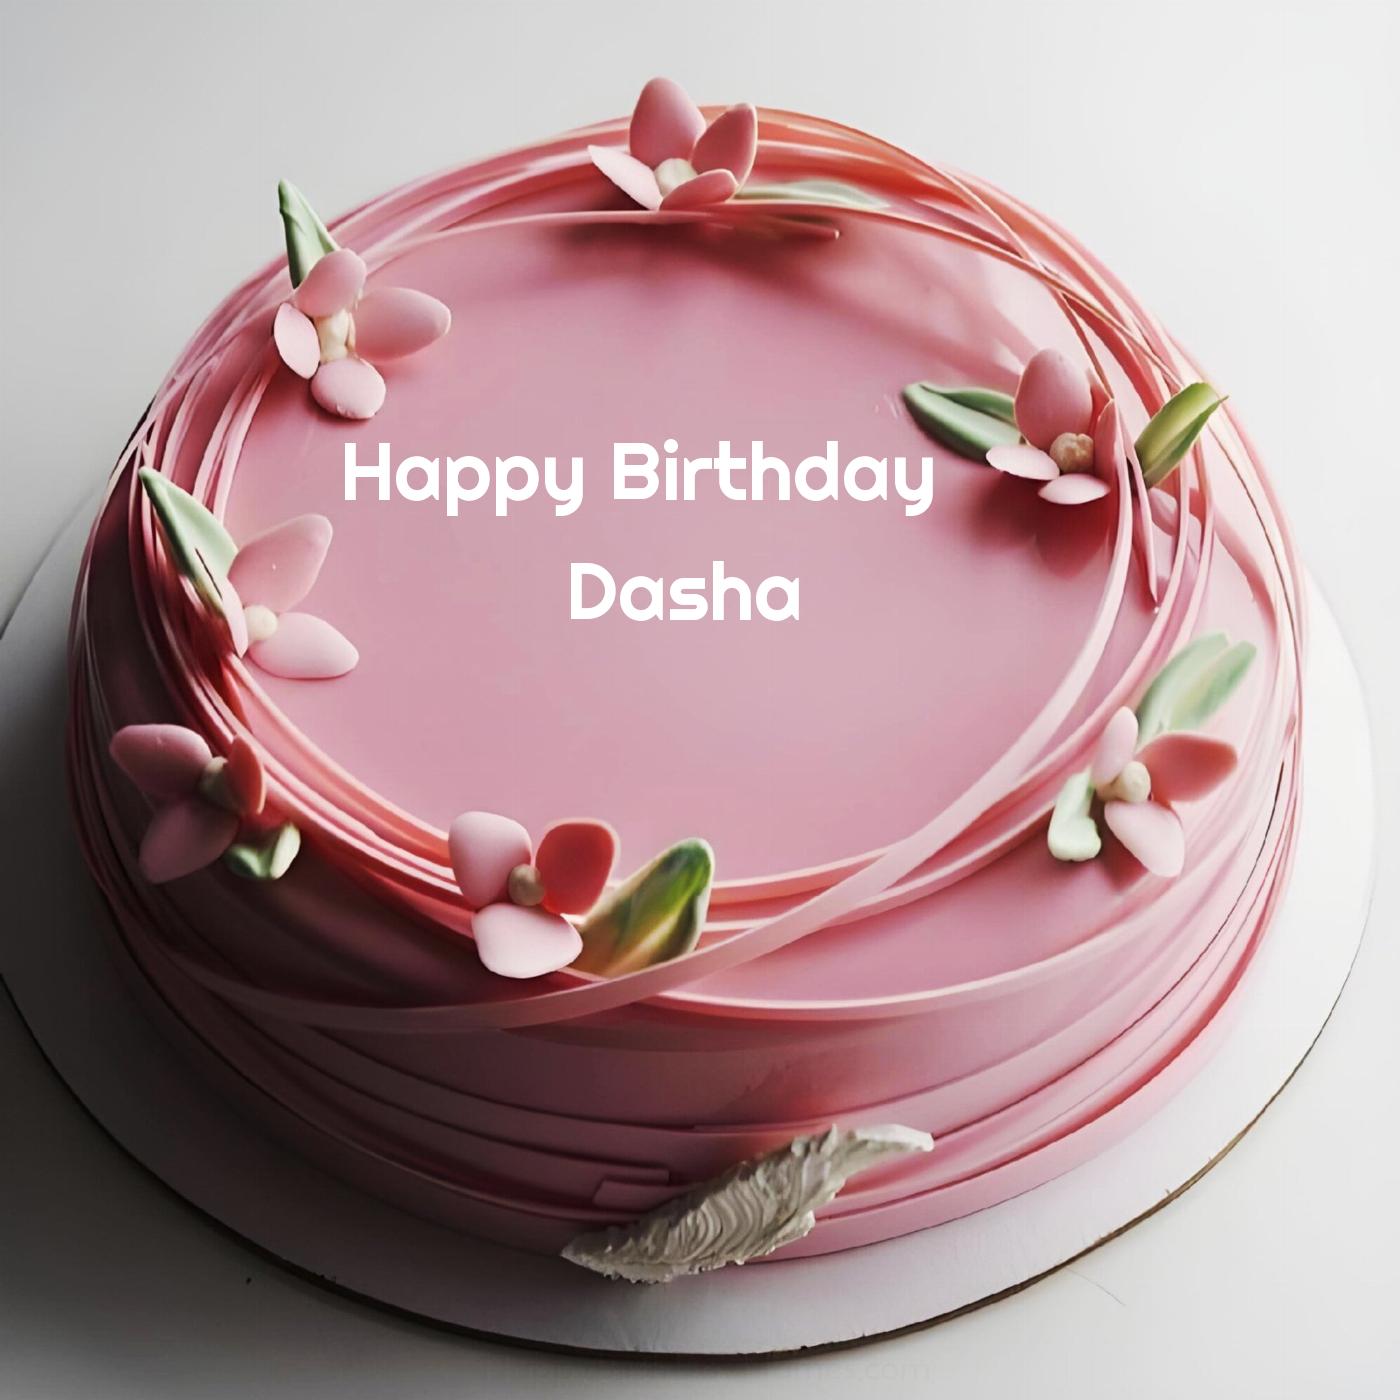 Happy Birthday Dasha Pink Flowers Cake